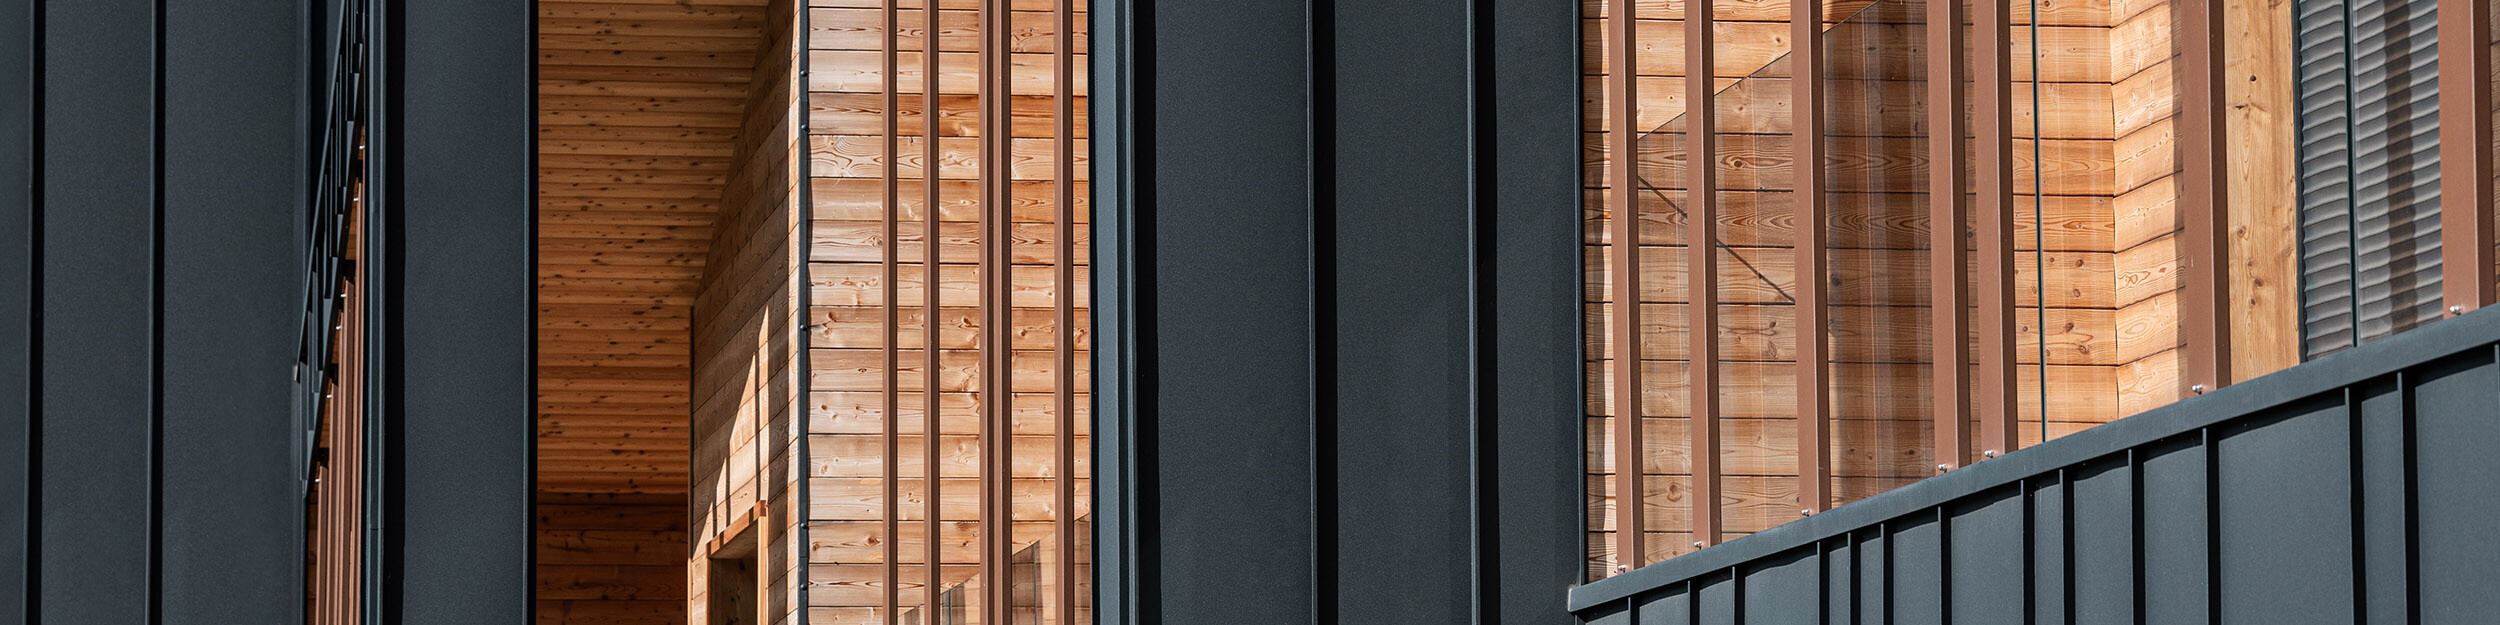 Nahaufnahme der Fassade eines modernen Gebäudes, die eine elegante Symbiose aus dunkelgrauen Prefalz Bahnen und warm getönten, natürlich gemaserten Holzbalken zeigt, die Struktur und Tiefe verleihen und durch die Sonneneinstrahlung beleuchtet werden.